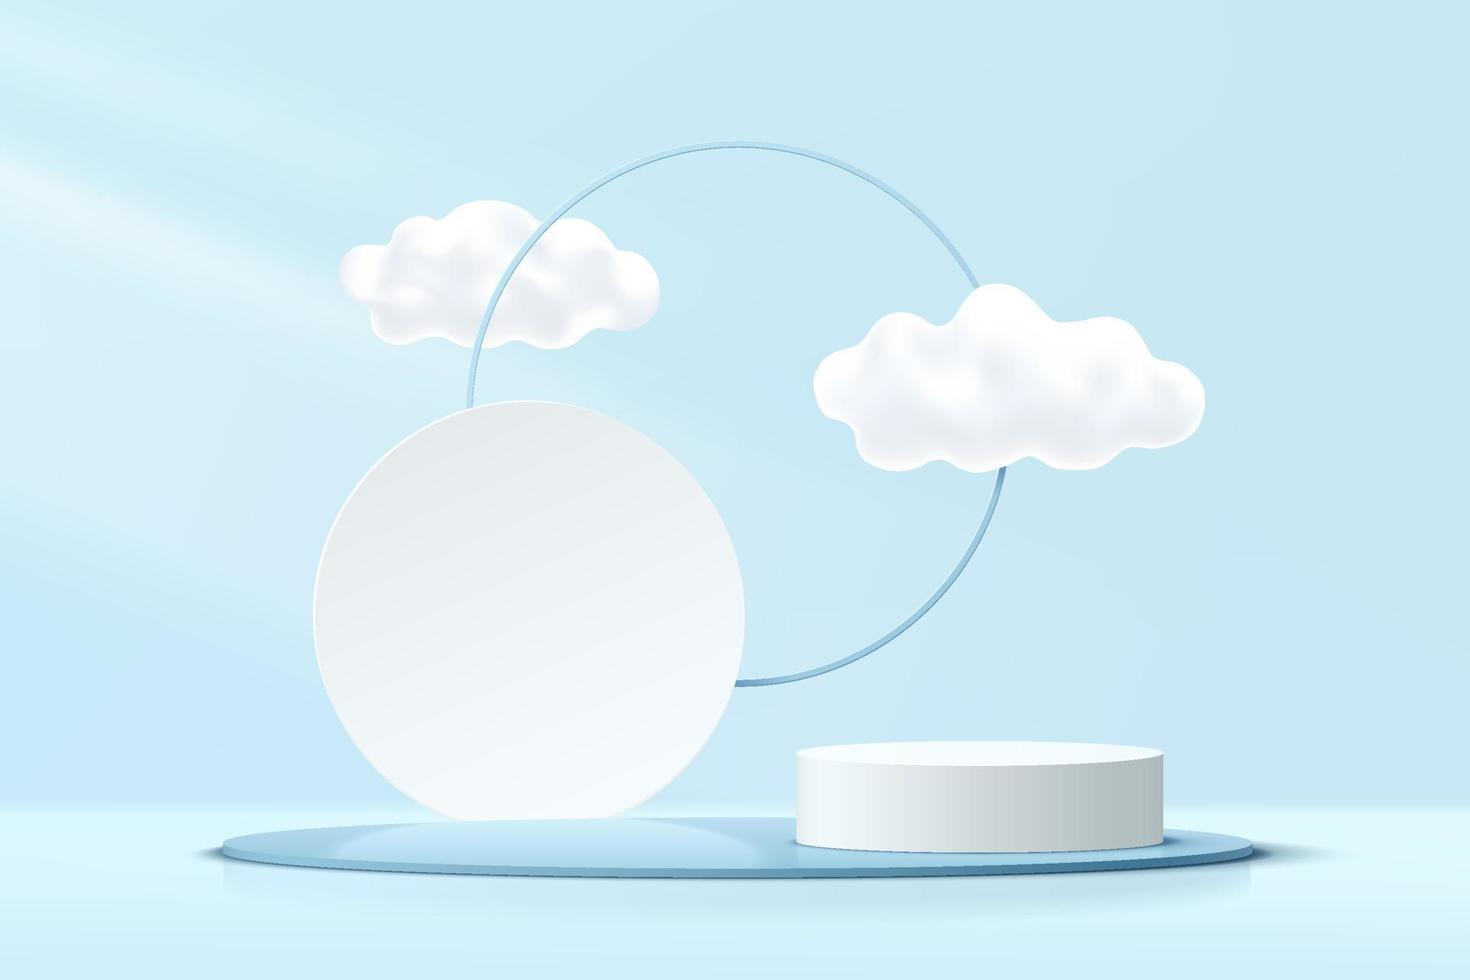 abstrakt 3d blå, vit cylinder piedestal podium med moln himmel och geometrisk cirkel bakgrund. pastellblå minimal väggscen. vektor rendering geometrisk plattform för produktvisning presentation.